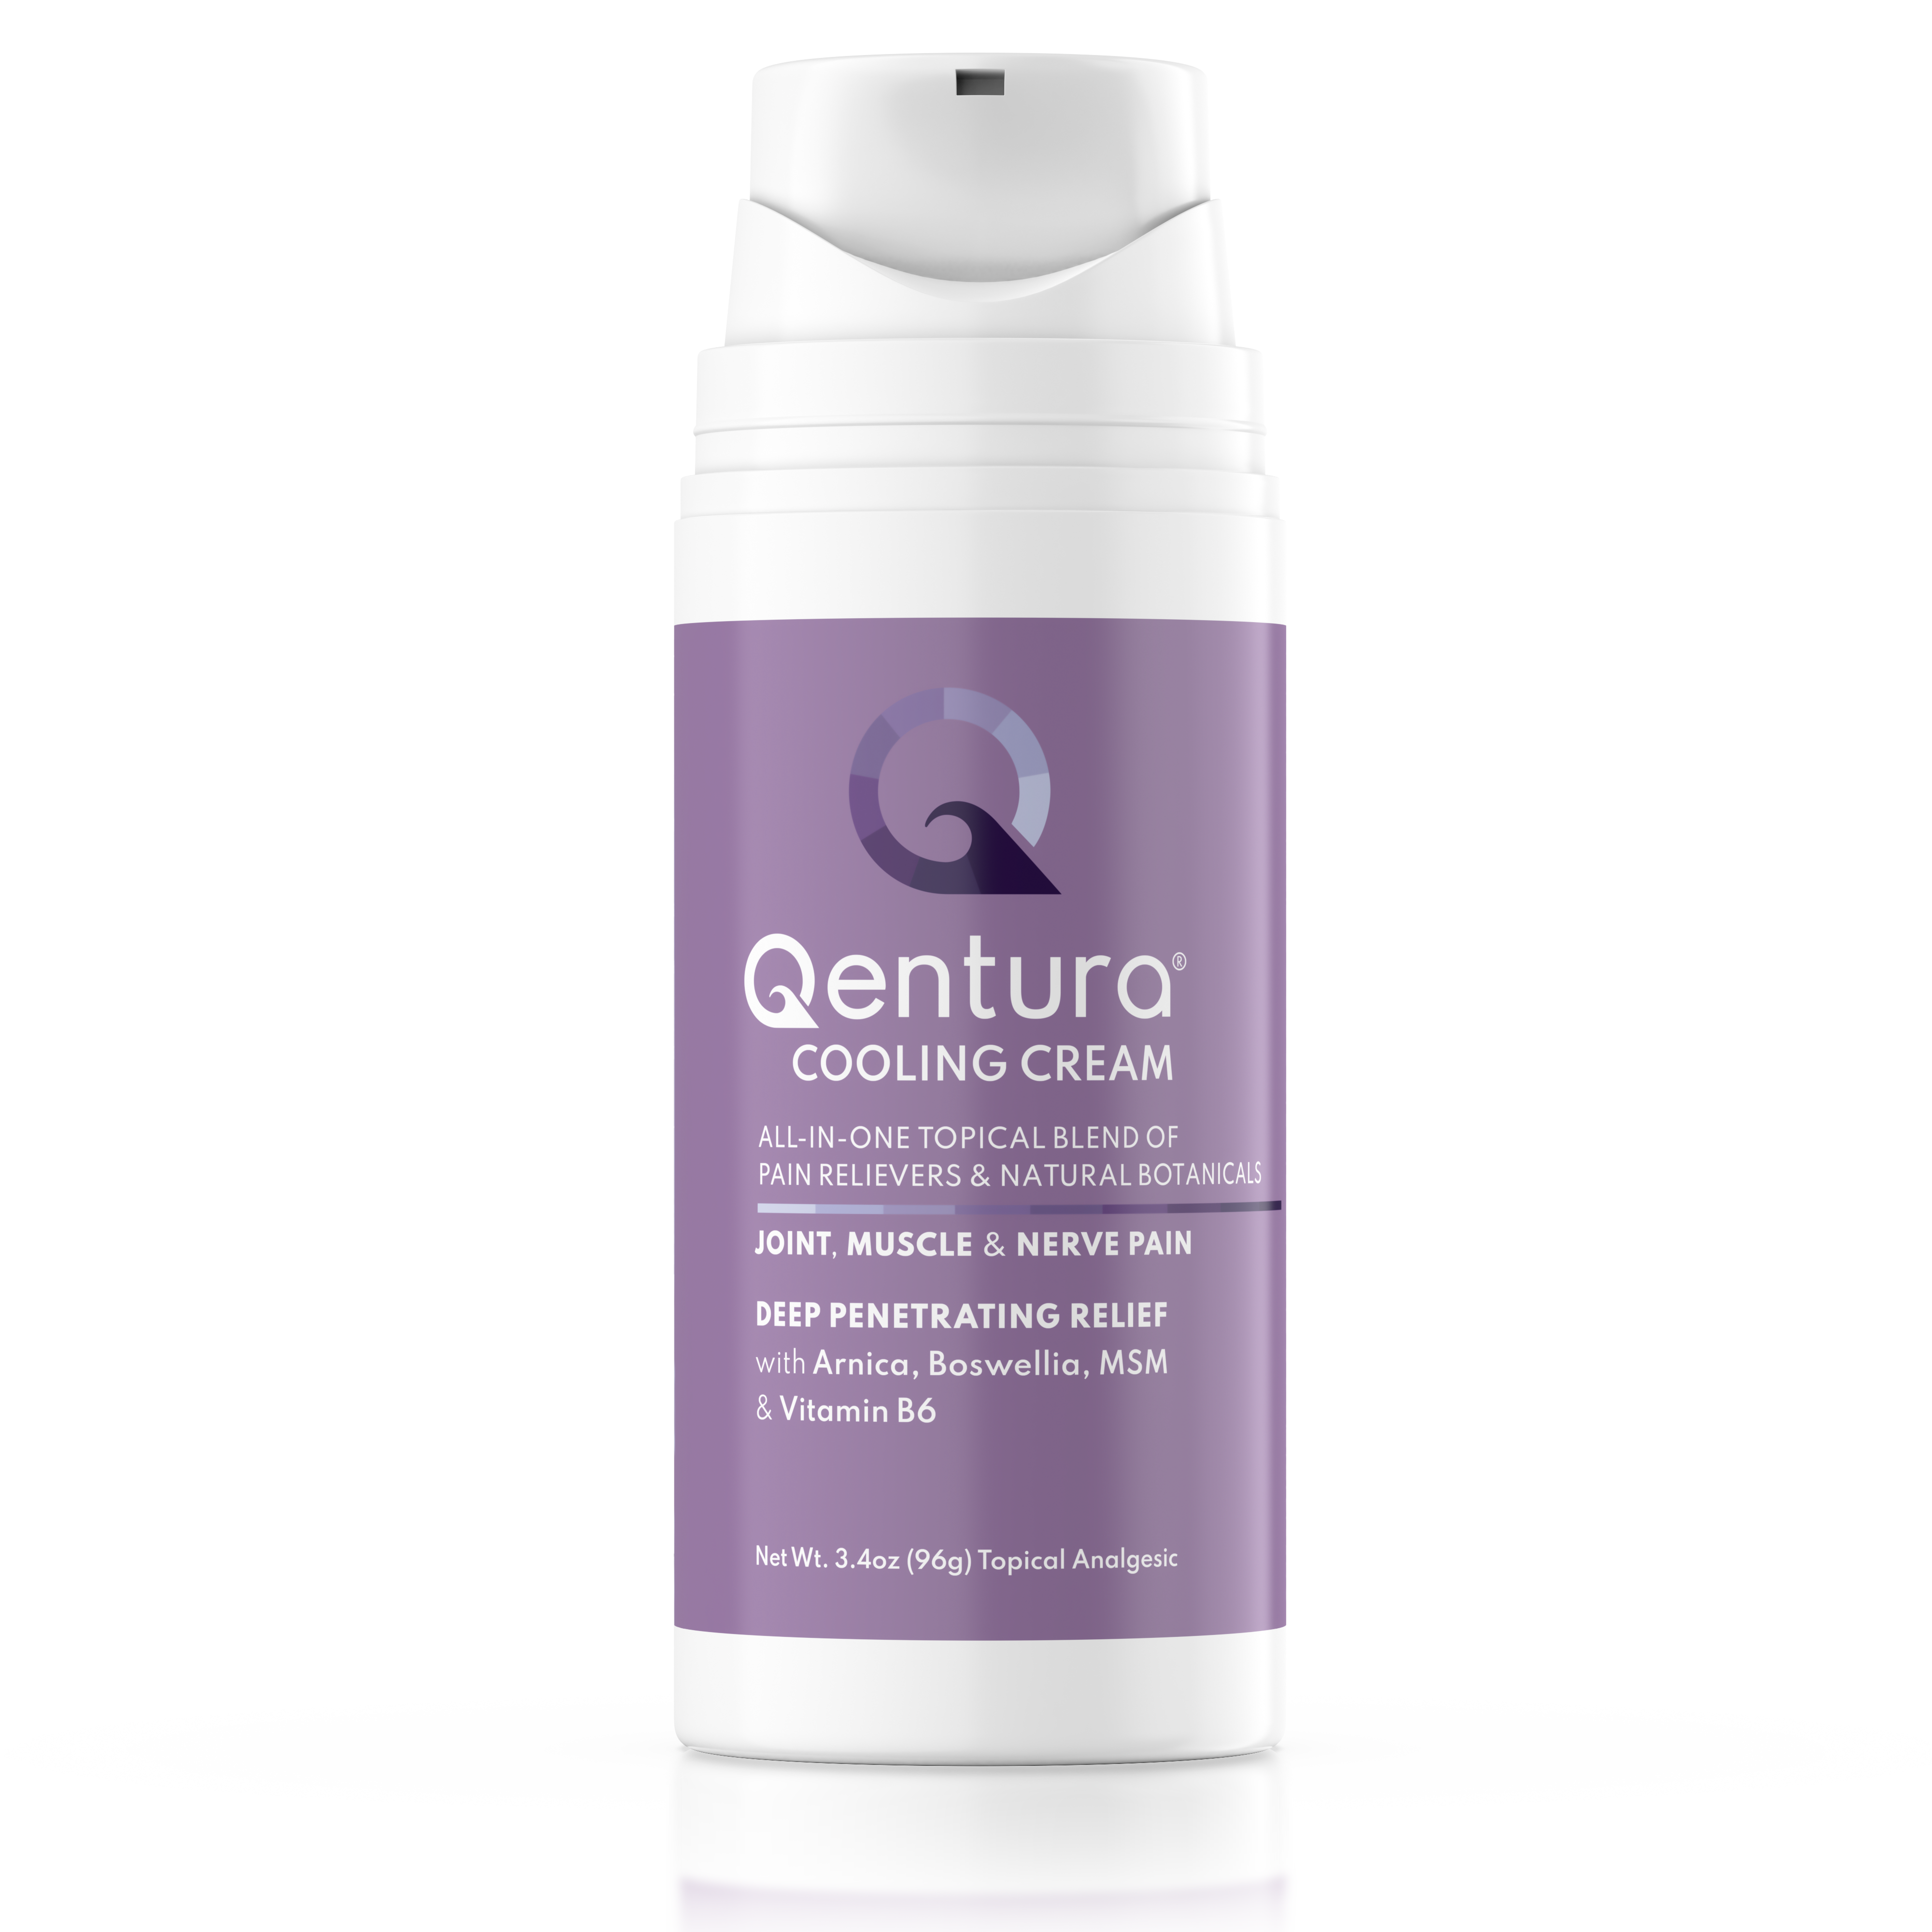 Qentura® Cooling Cream